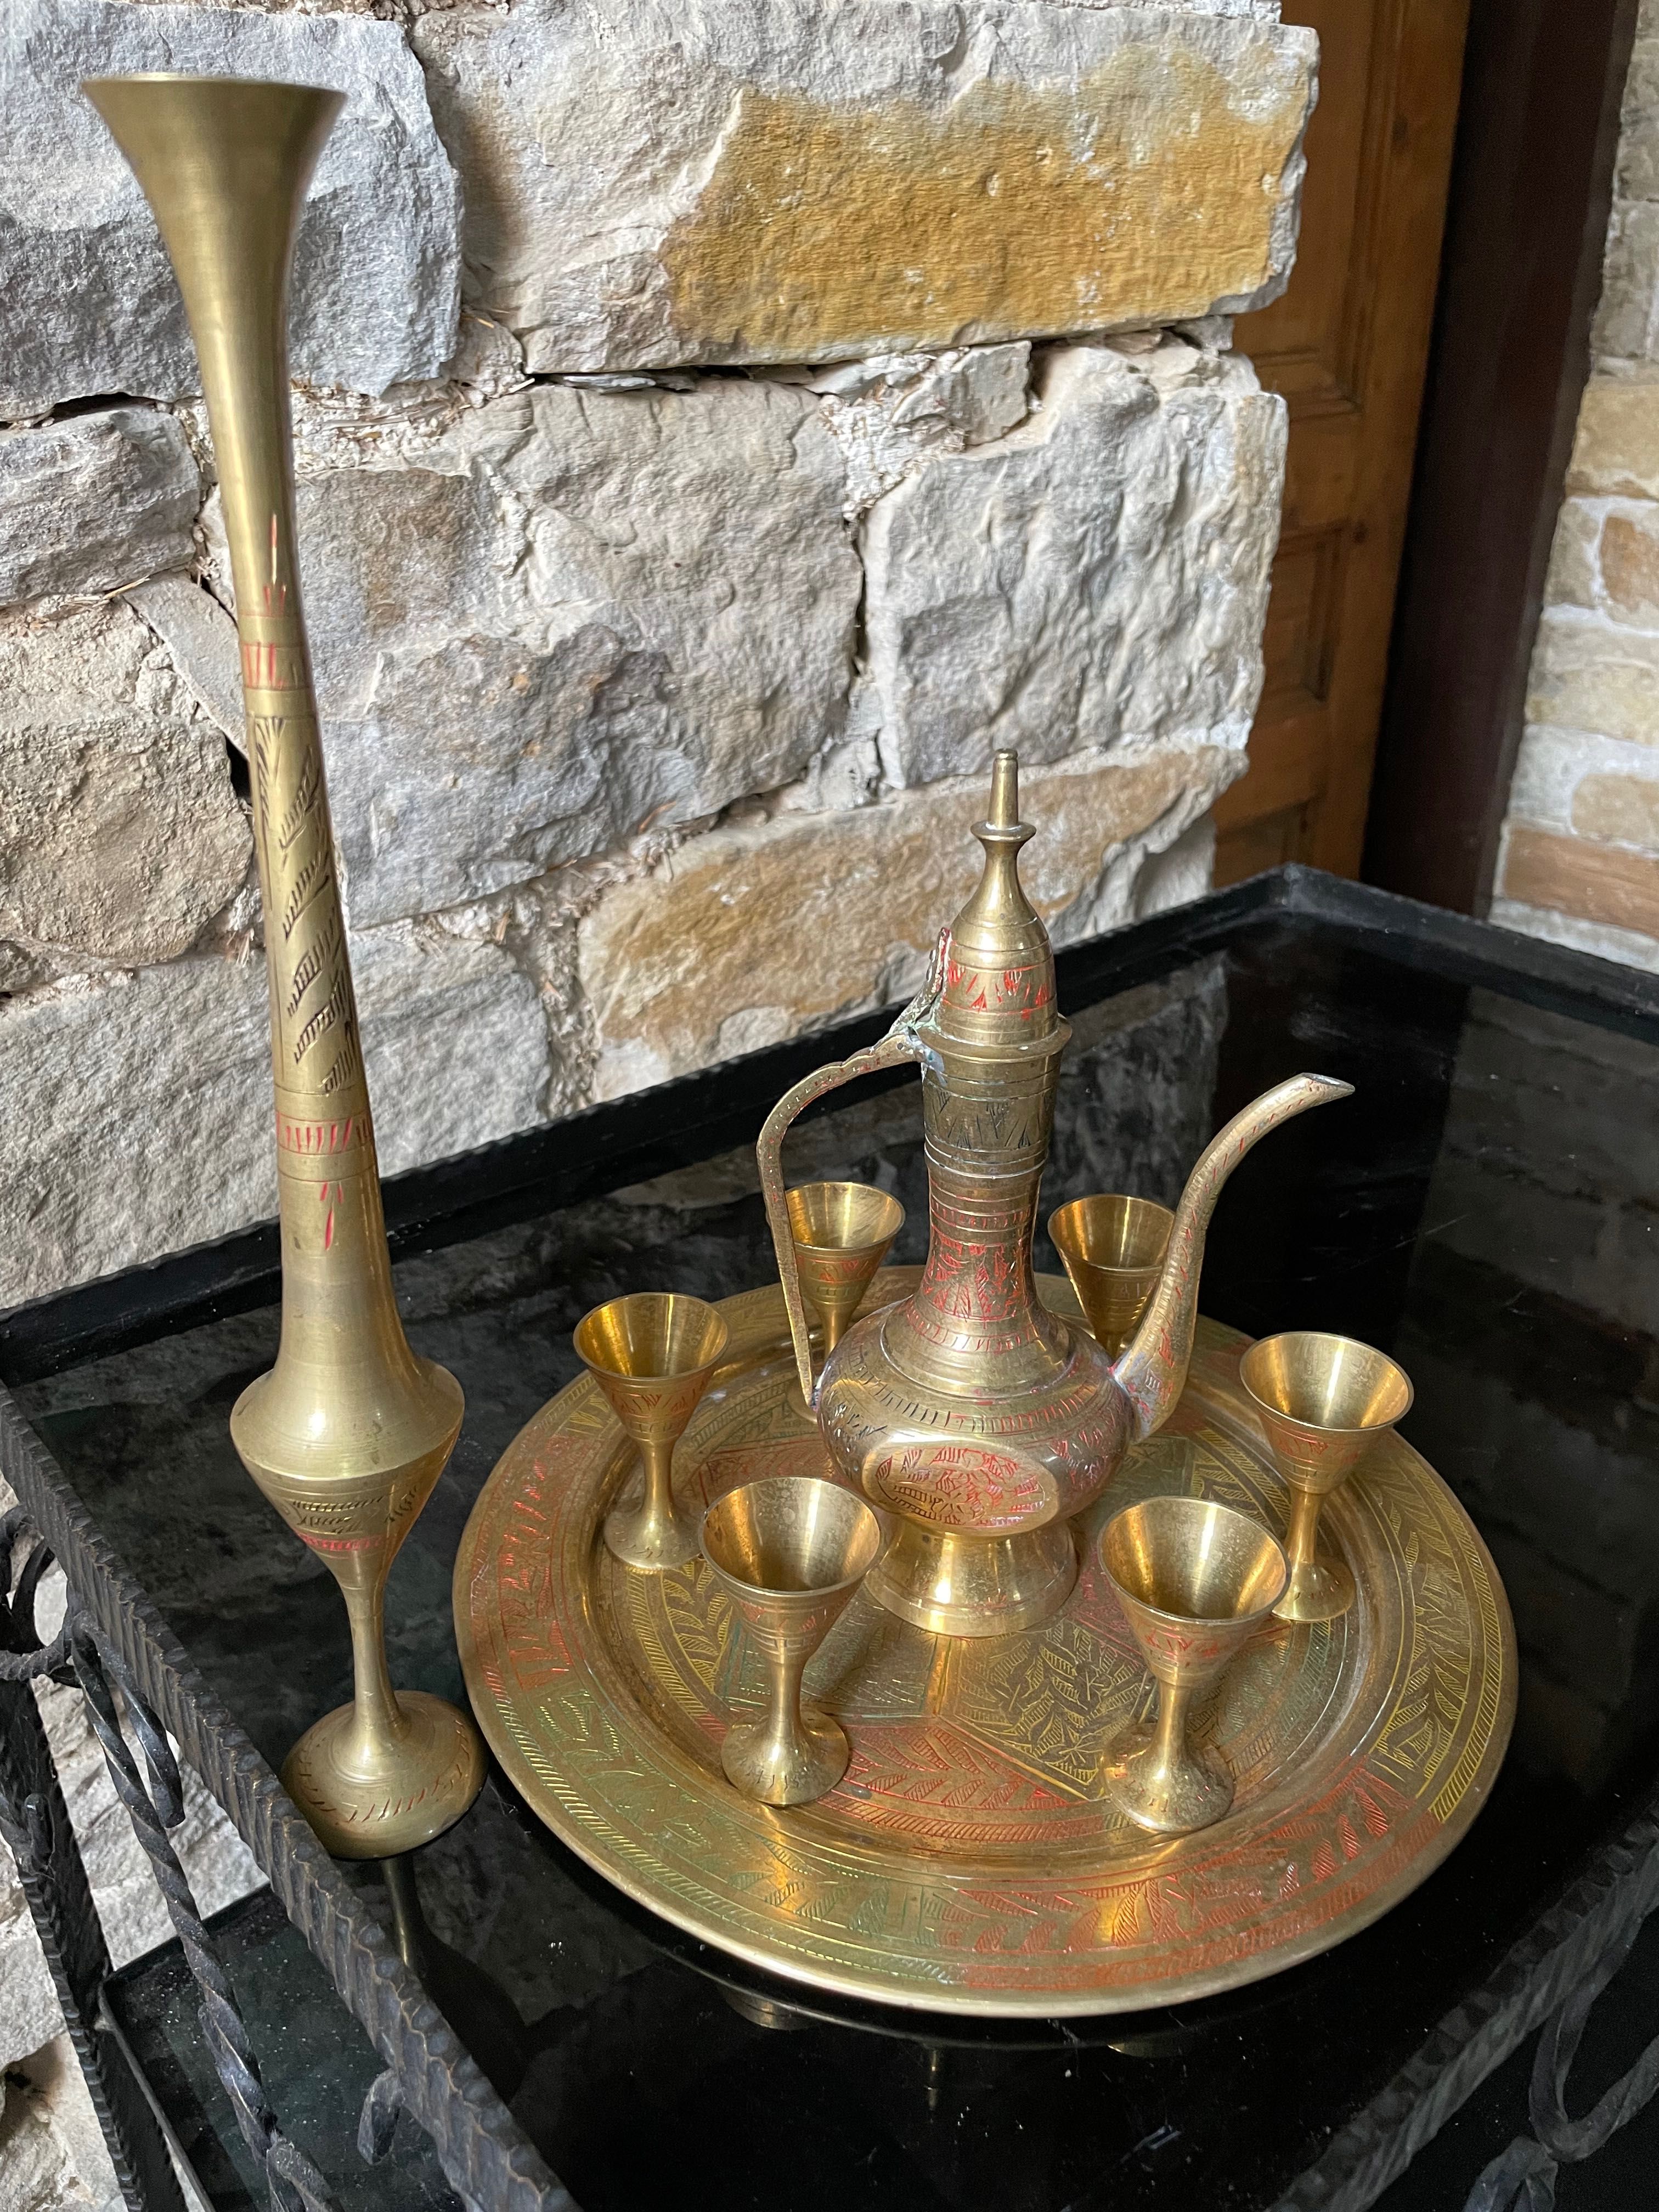 Сервиз антика пълен комплект - 6 чаши, кана, свещник и поднос